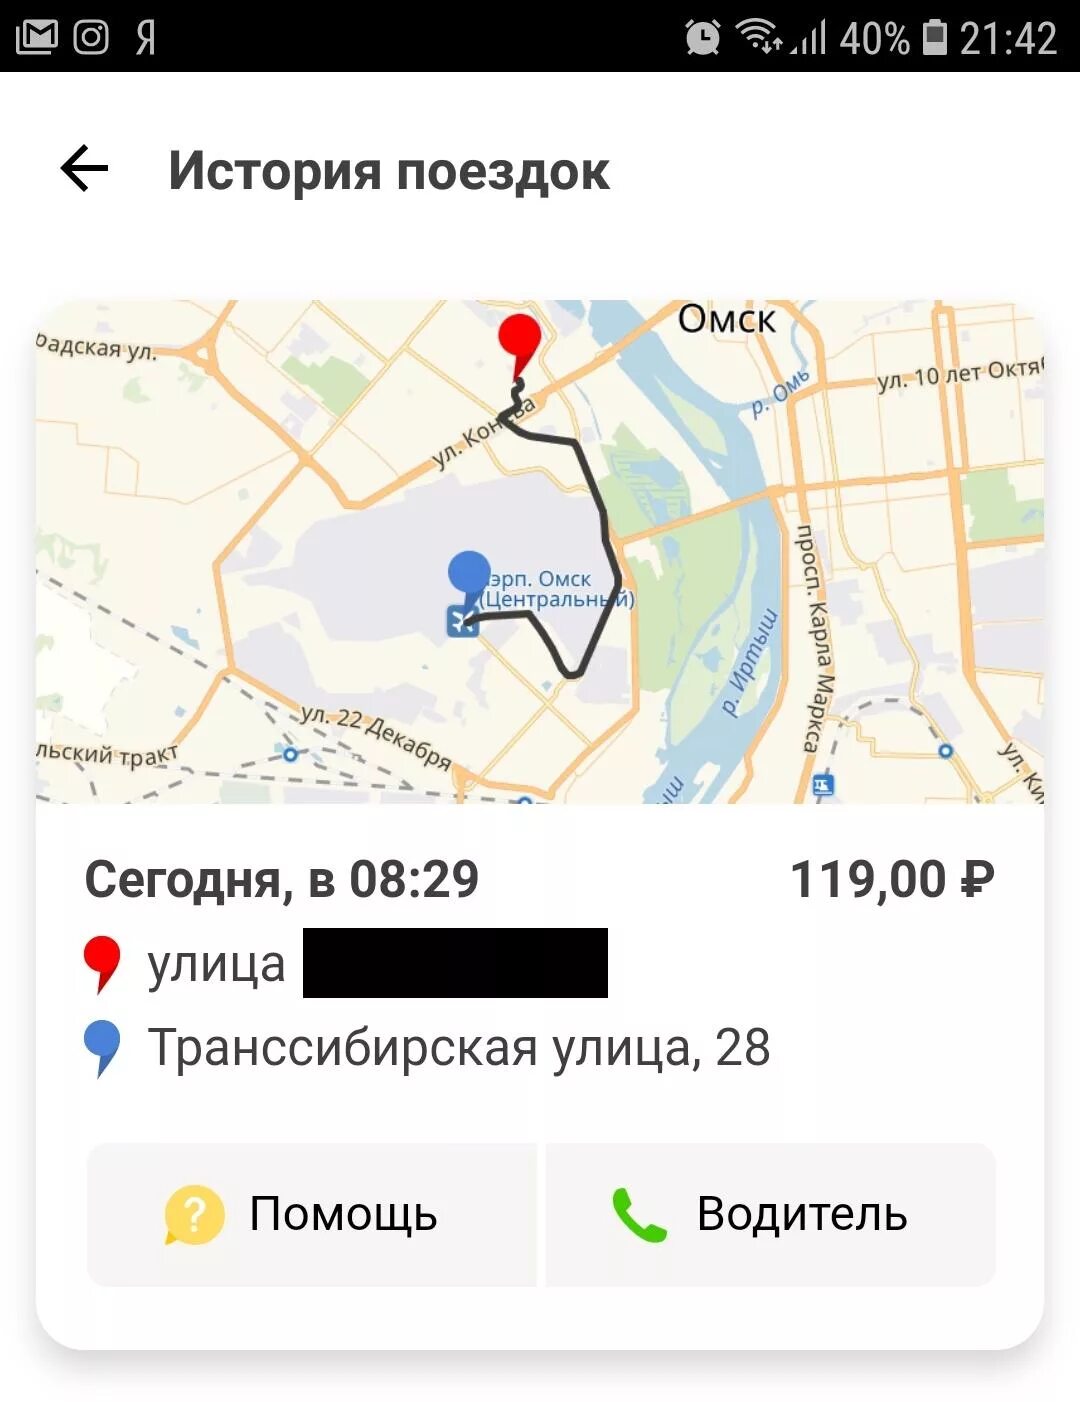 Приложение такси в Омске. Такси омск дешевое номер телефона